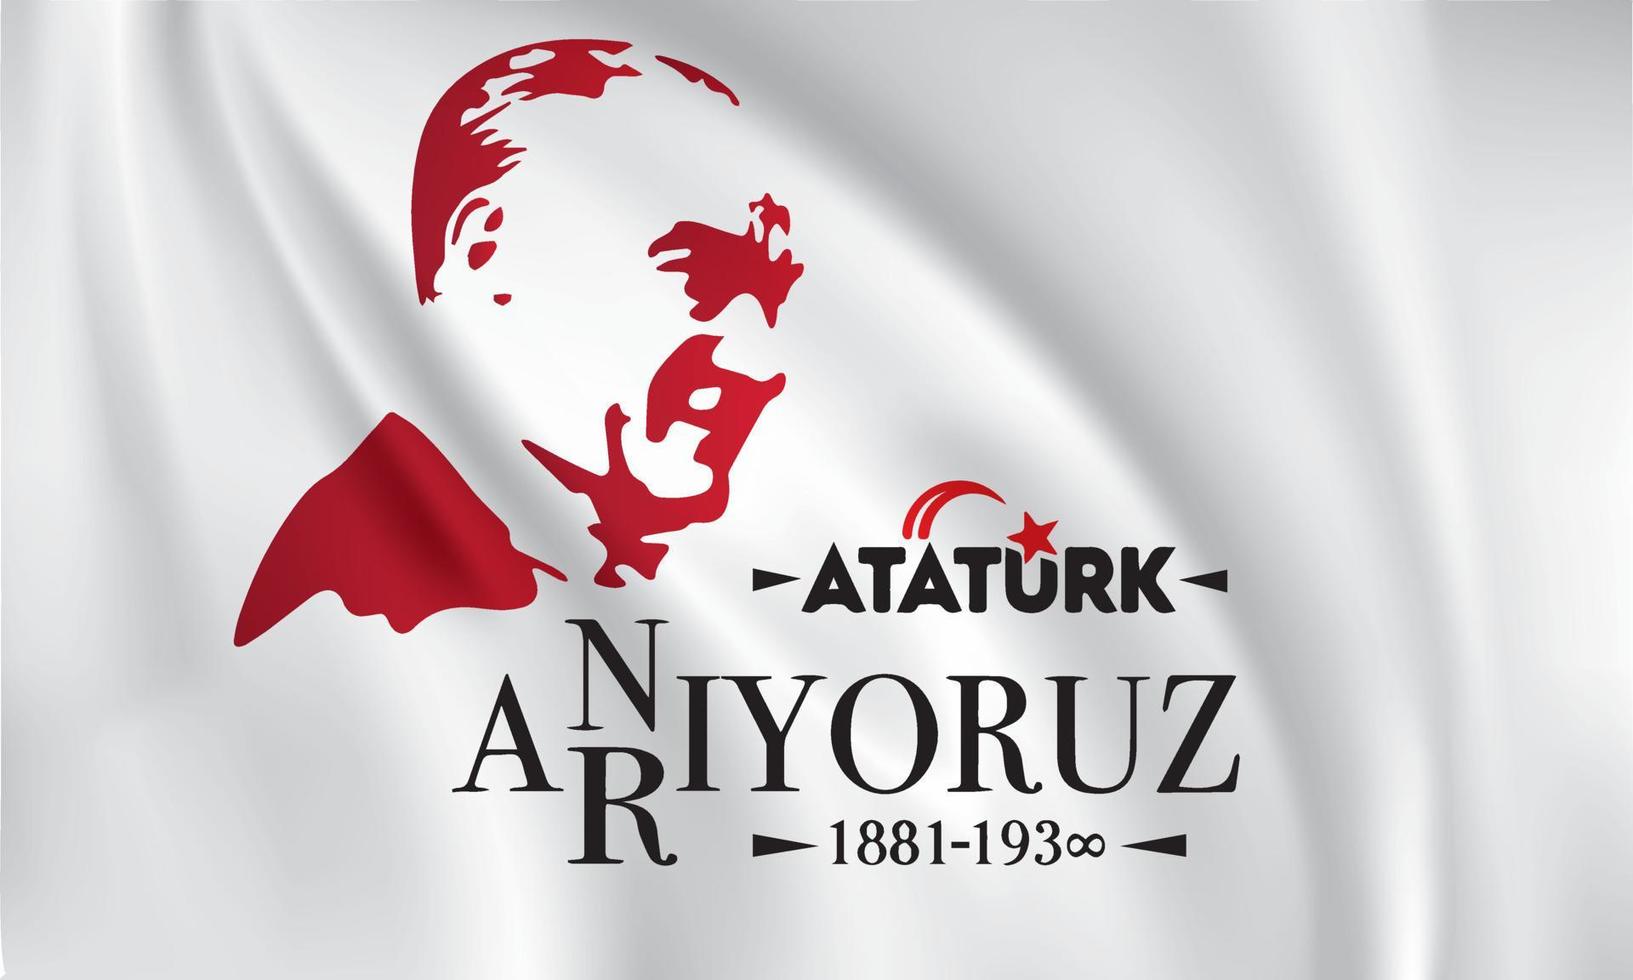 10 kasim turkiye cumhuriyetinine kurucusu mustafa kemal ataturk un olum yildonumu. vector